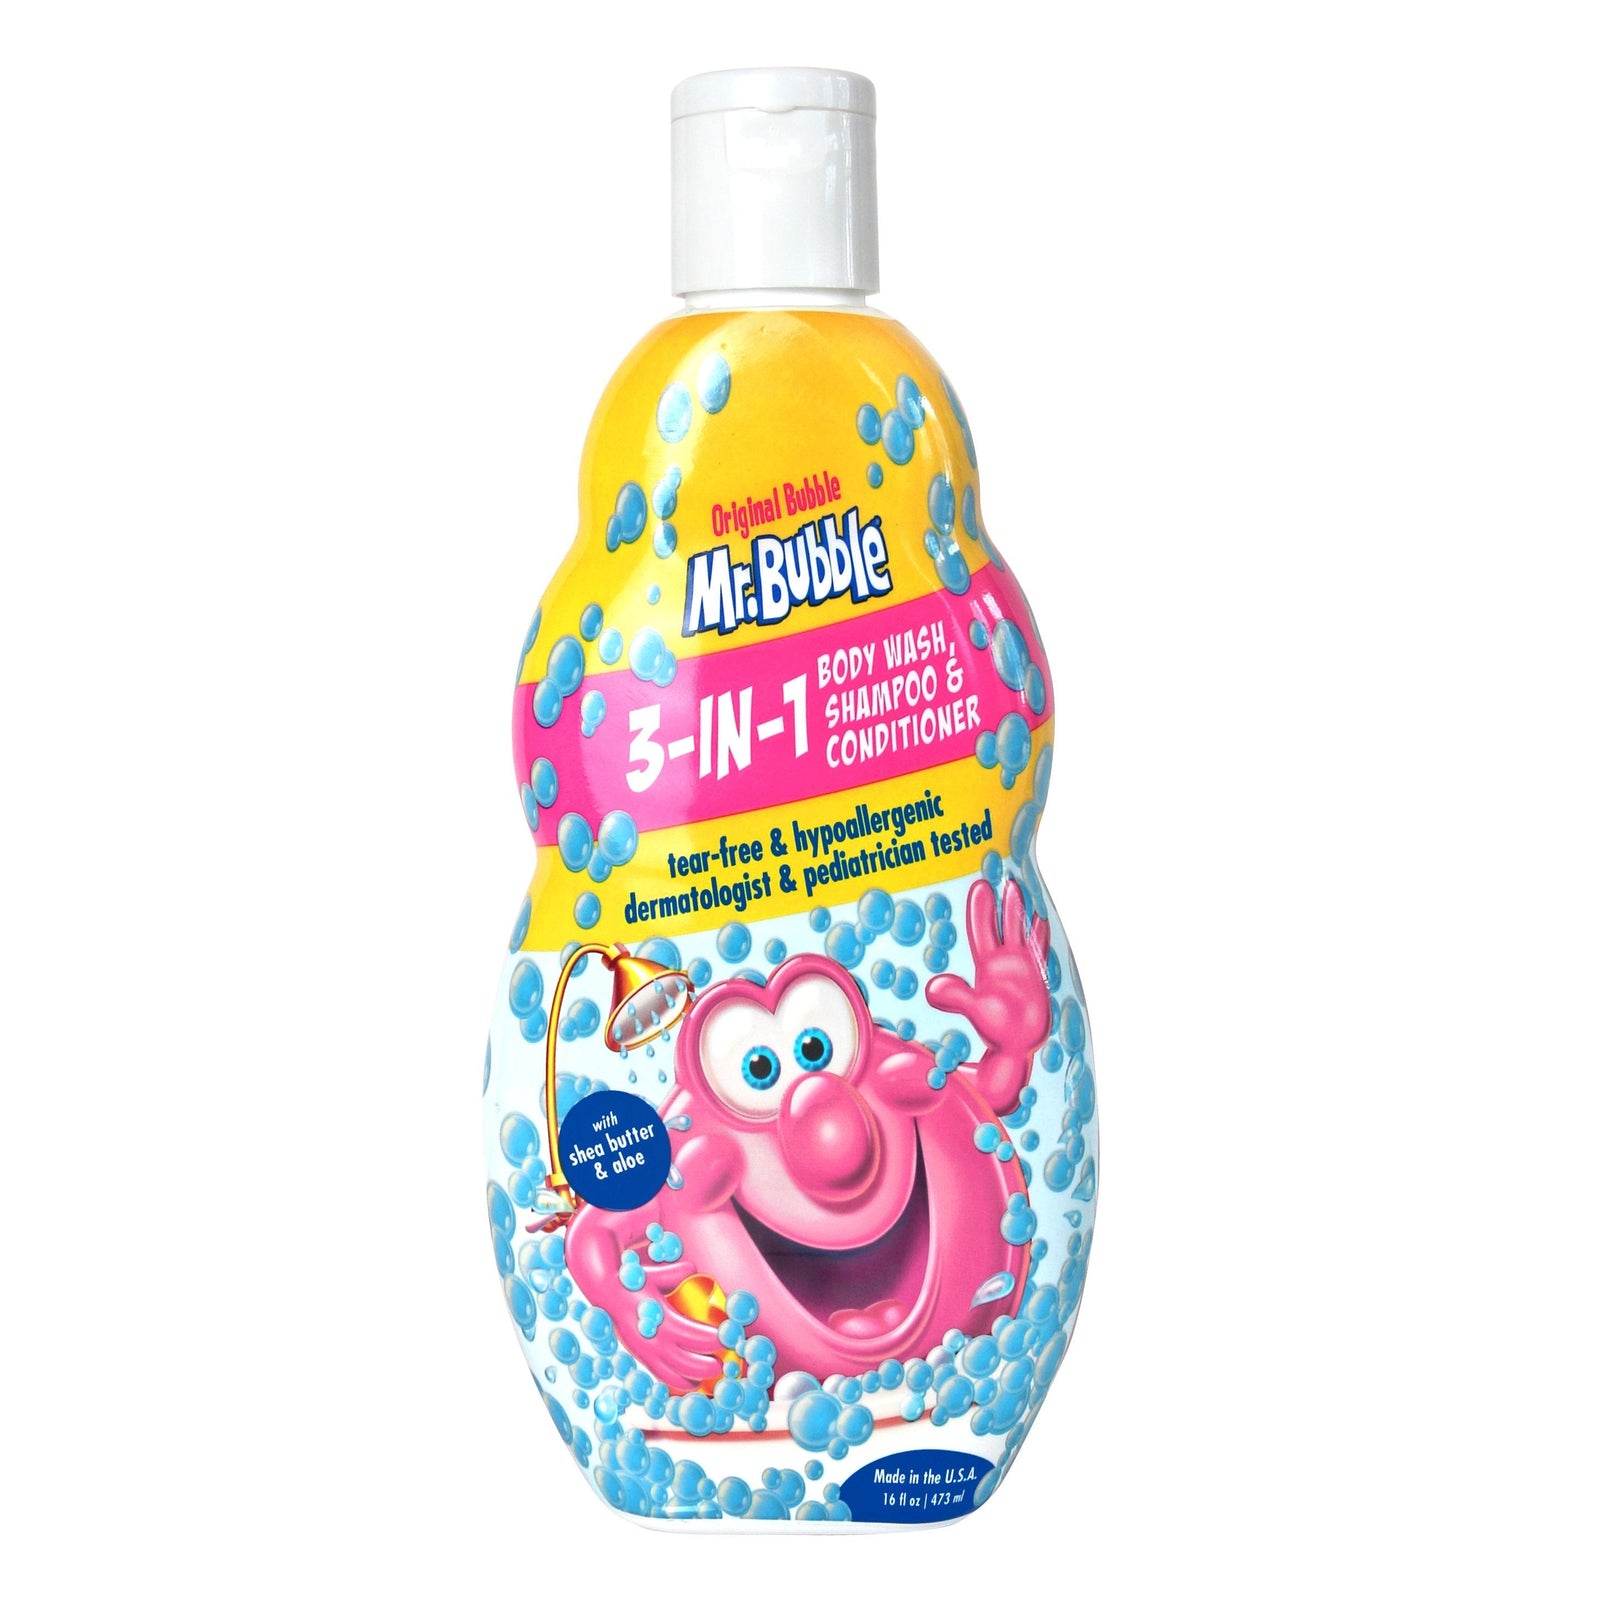 Mr. Bubble 3-in-1 Body Wash, Shampoo, & Conditioner